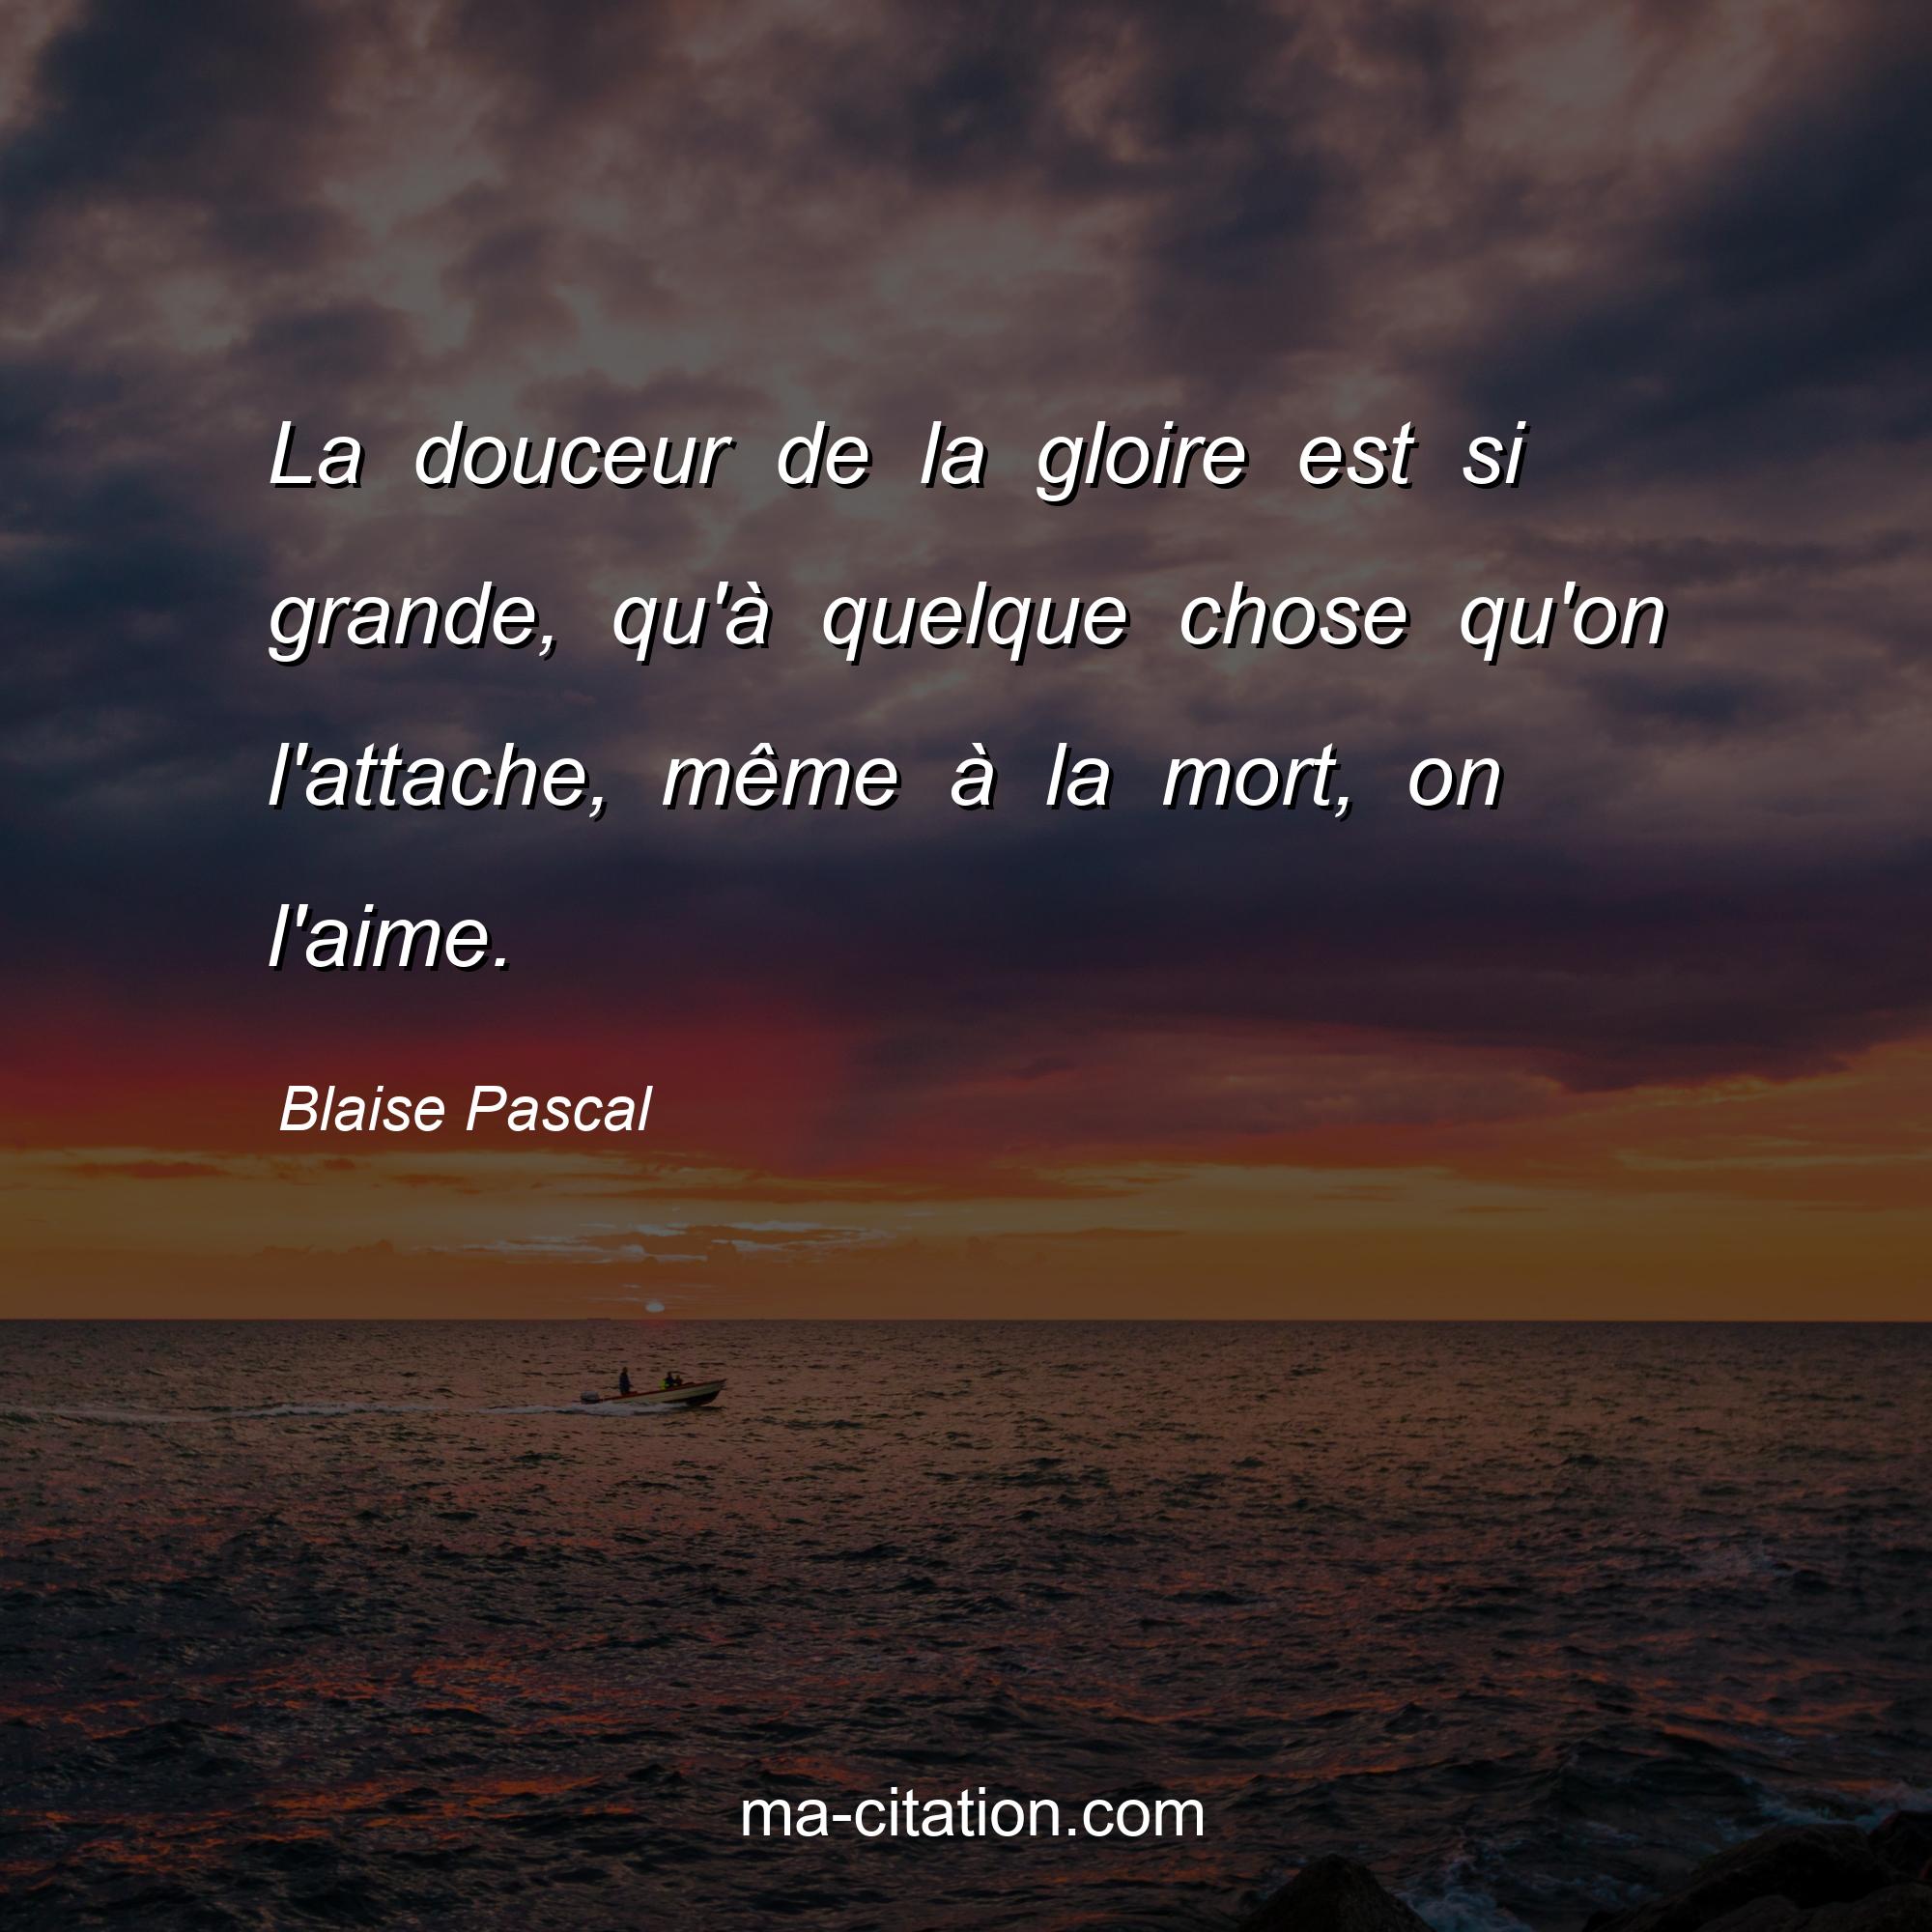 Blaise Pascal : La douceur de la gloire est si grande, qu'à quelque chose qu'on l'attache, même à la mort, on l'aime.